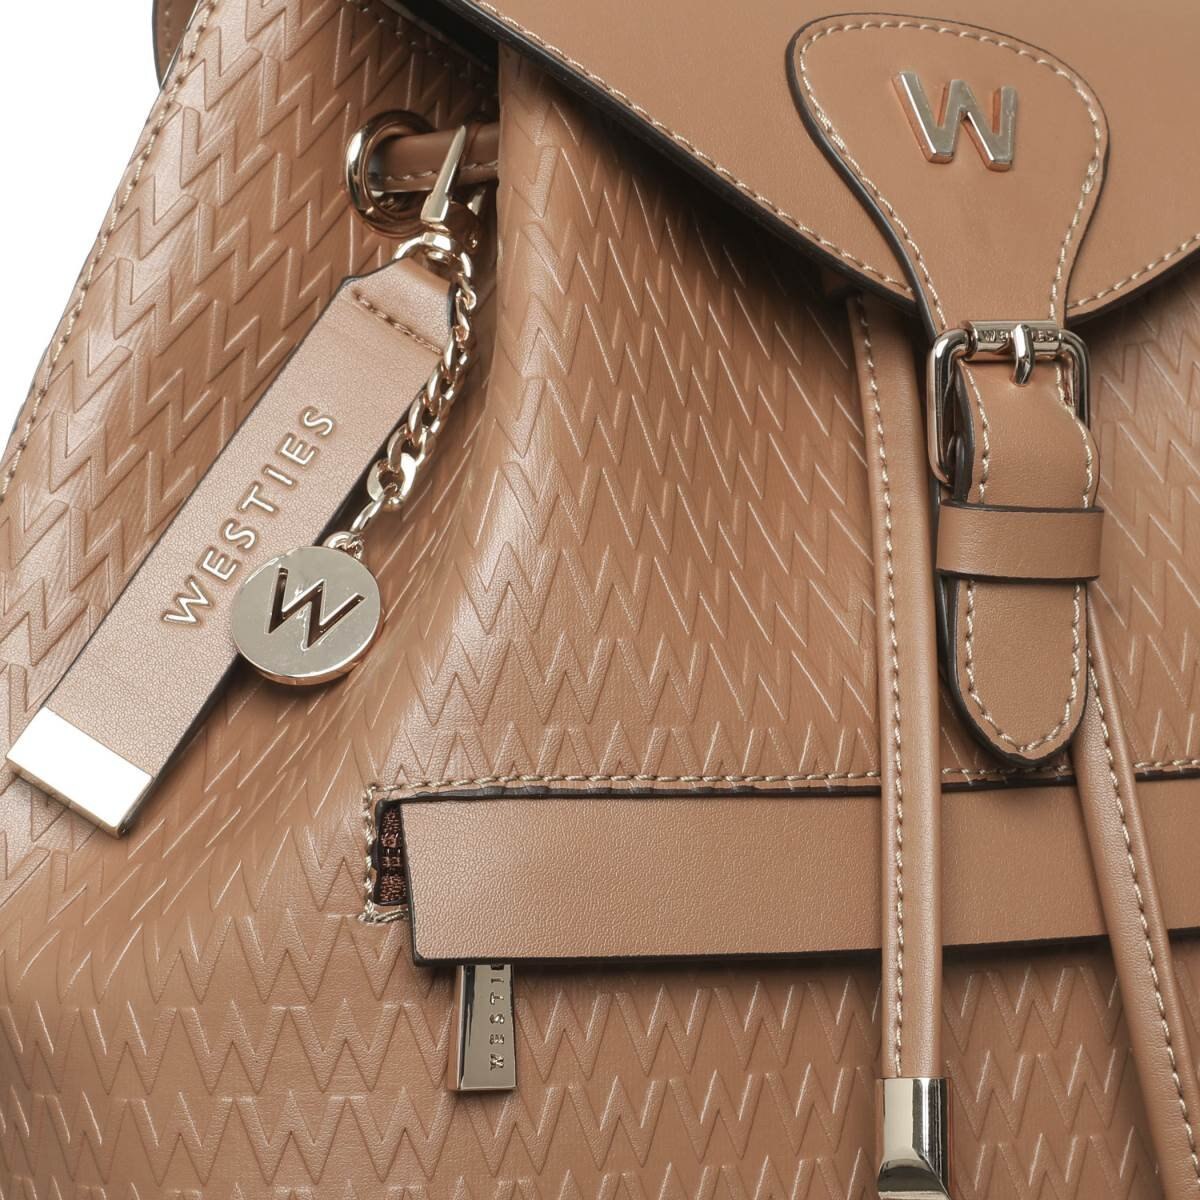 Las mejores ofertas en Botas para mujeres Louis Vuitton M